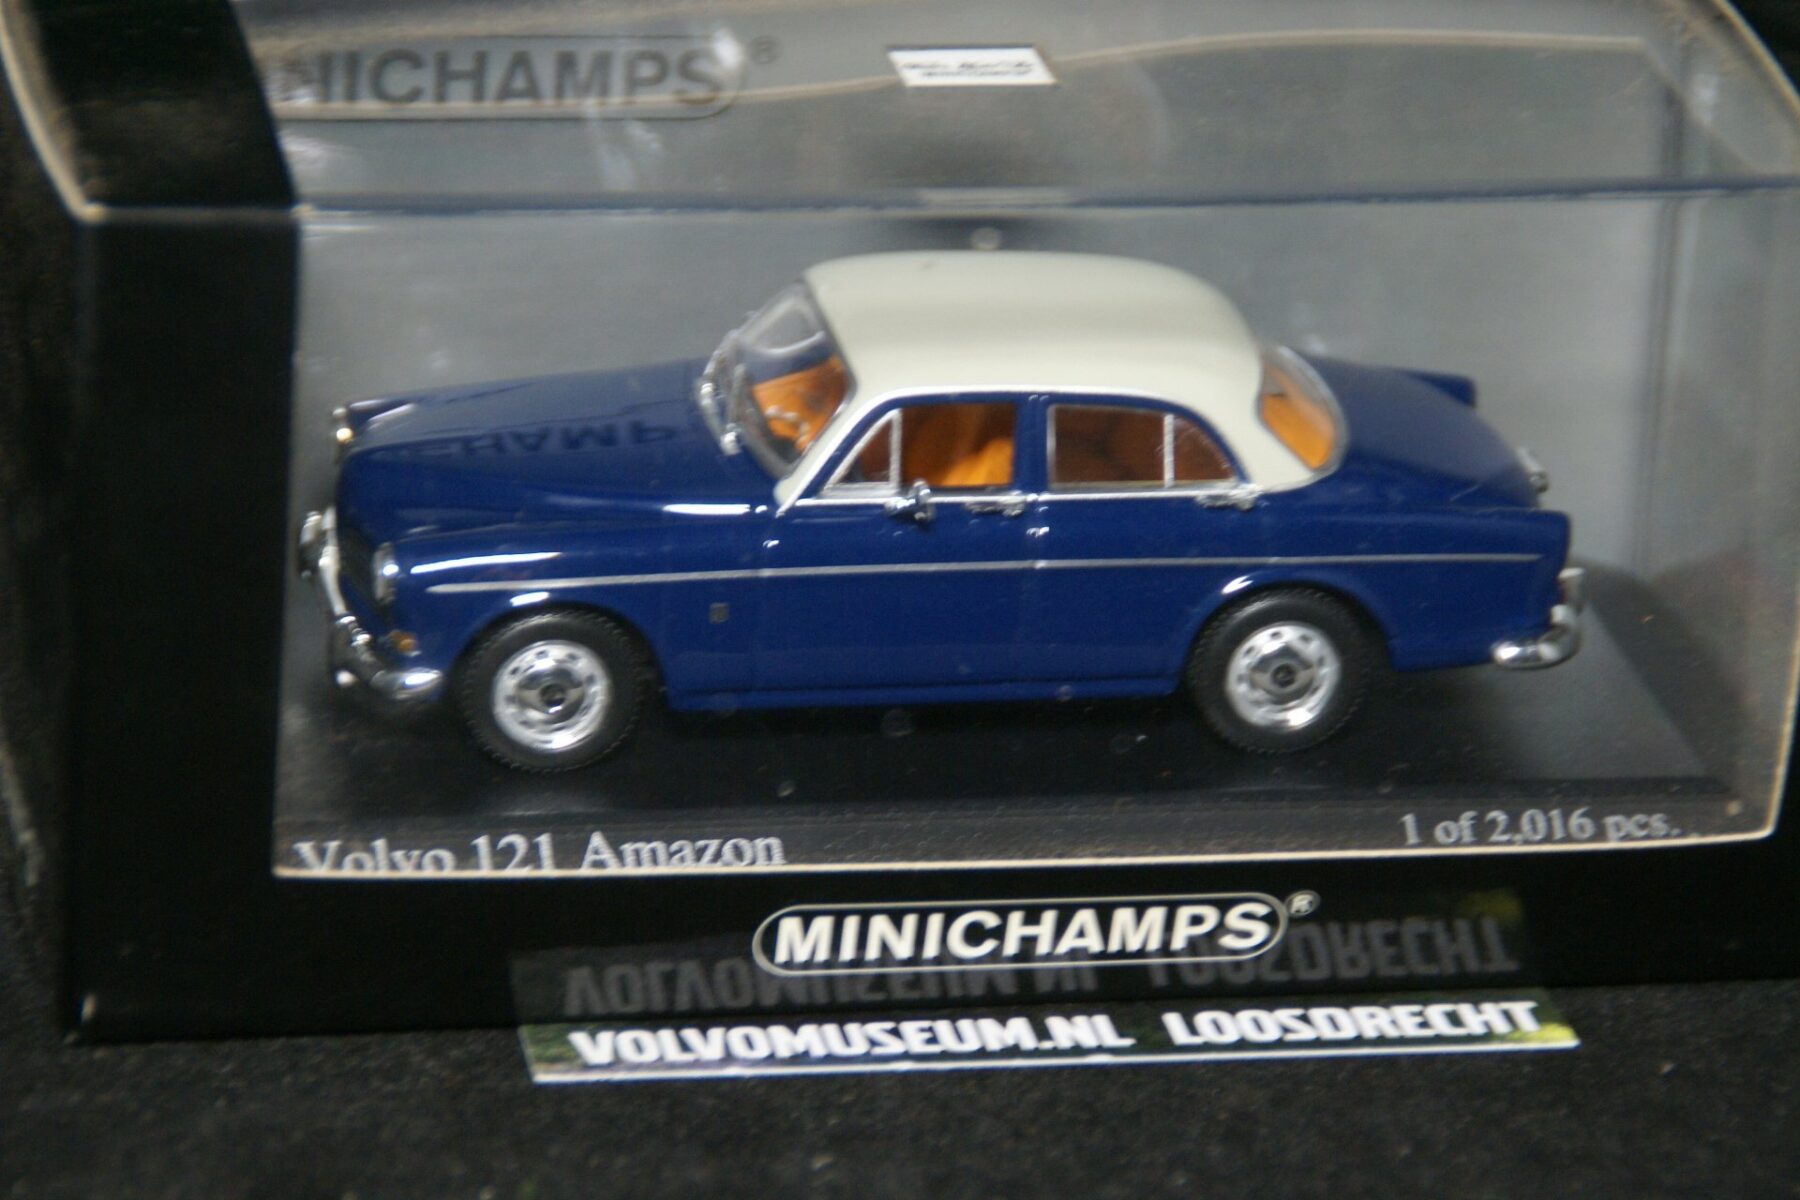 DSC03244 miniatuur 1966 Volvo Amazon 130 blauw wit 1op43 Minichamps 171060 1 van 2016 MB